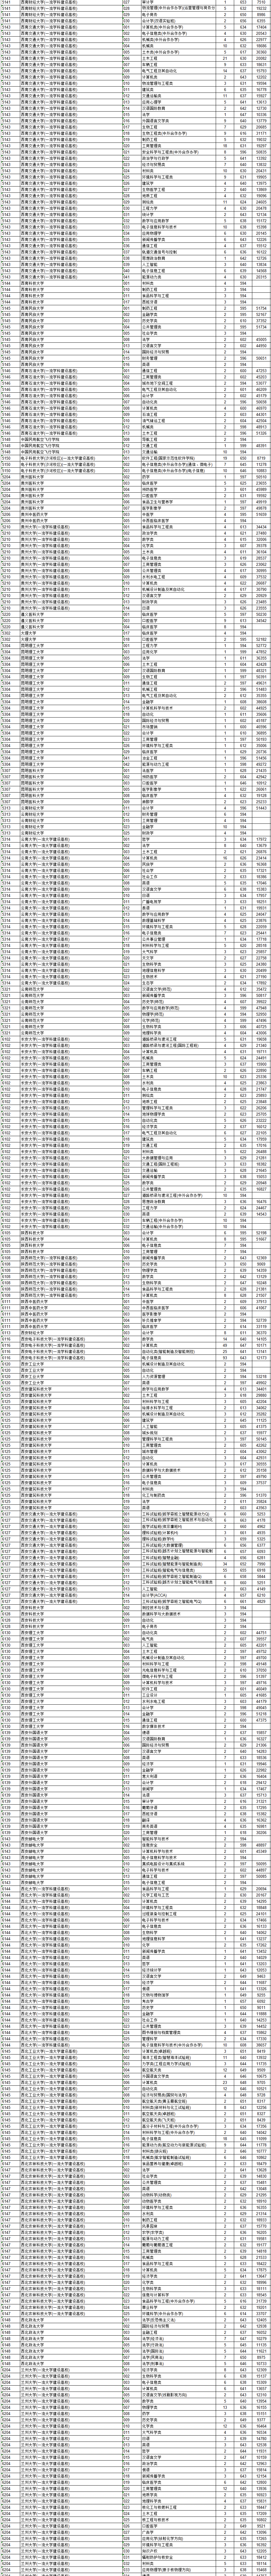 浙江省2020年普通高校招生普通类第一段平行投档分数线表